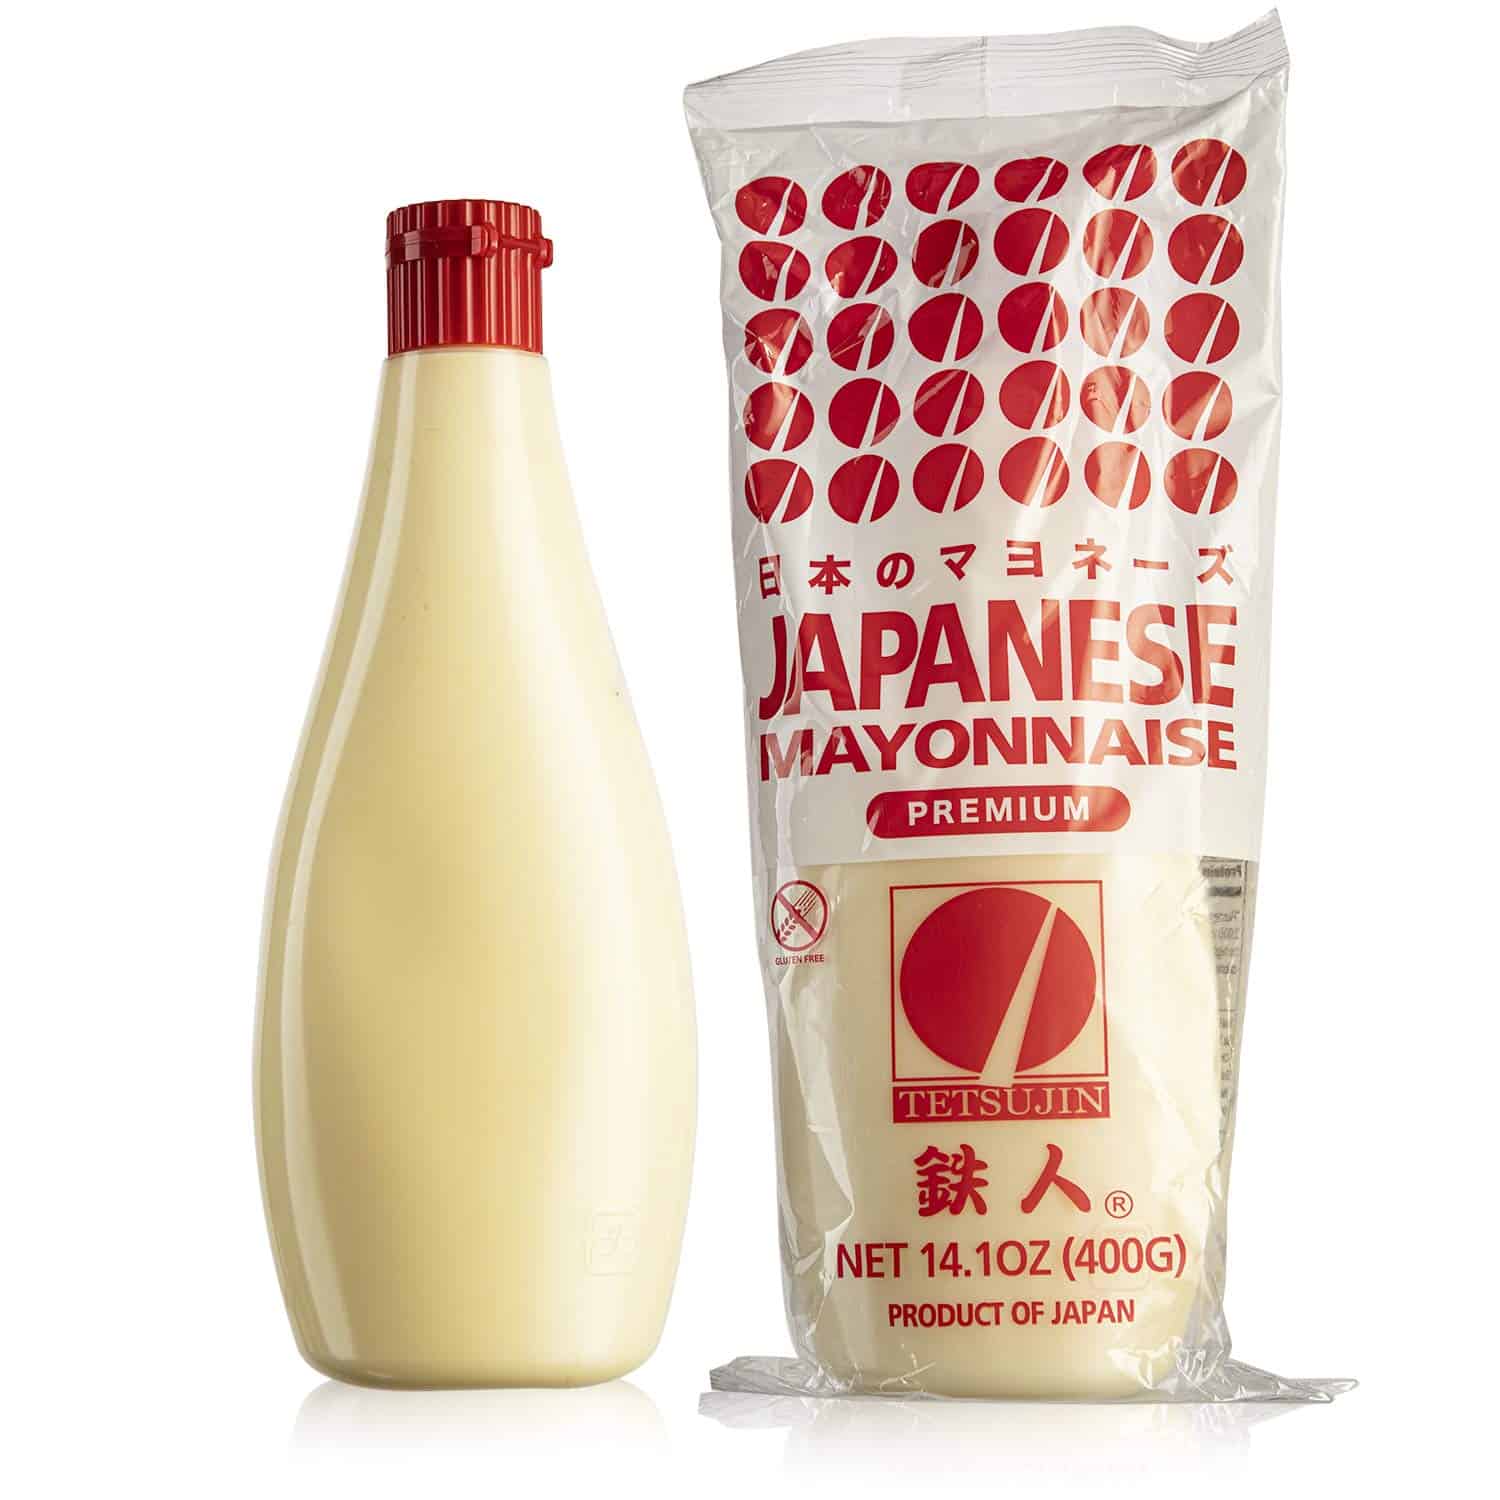 Japanese Mayonnaise [or Kewpie] vs American: Taste & Nutrition